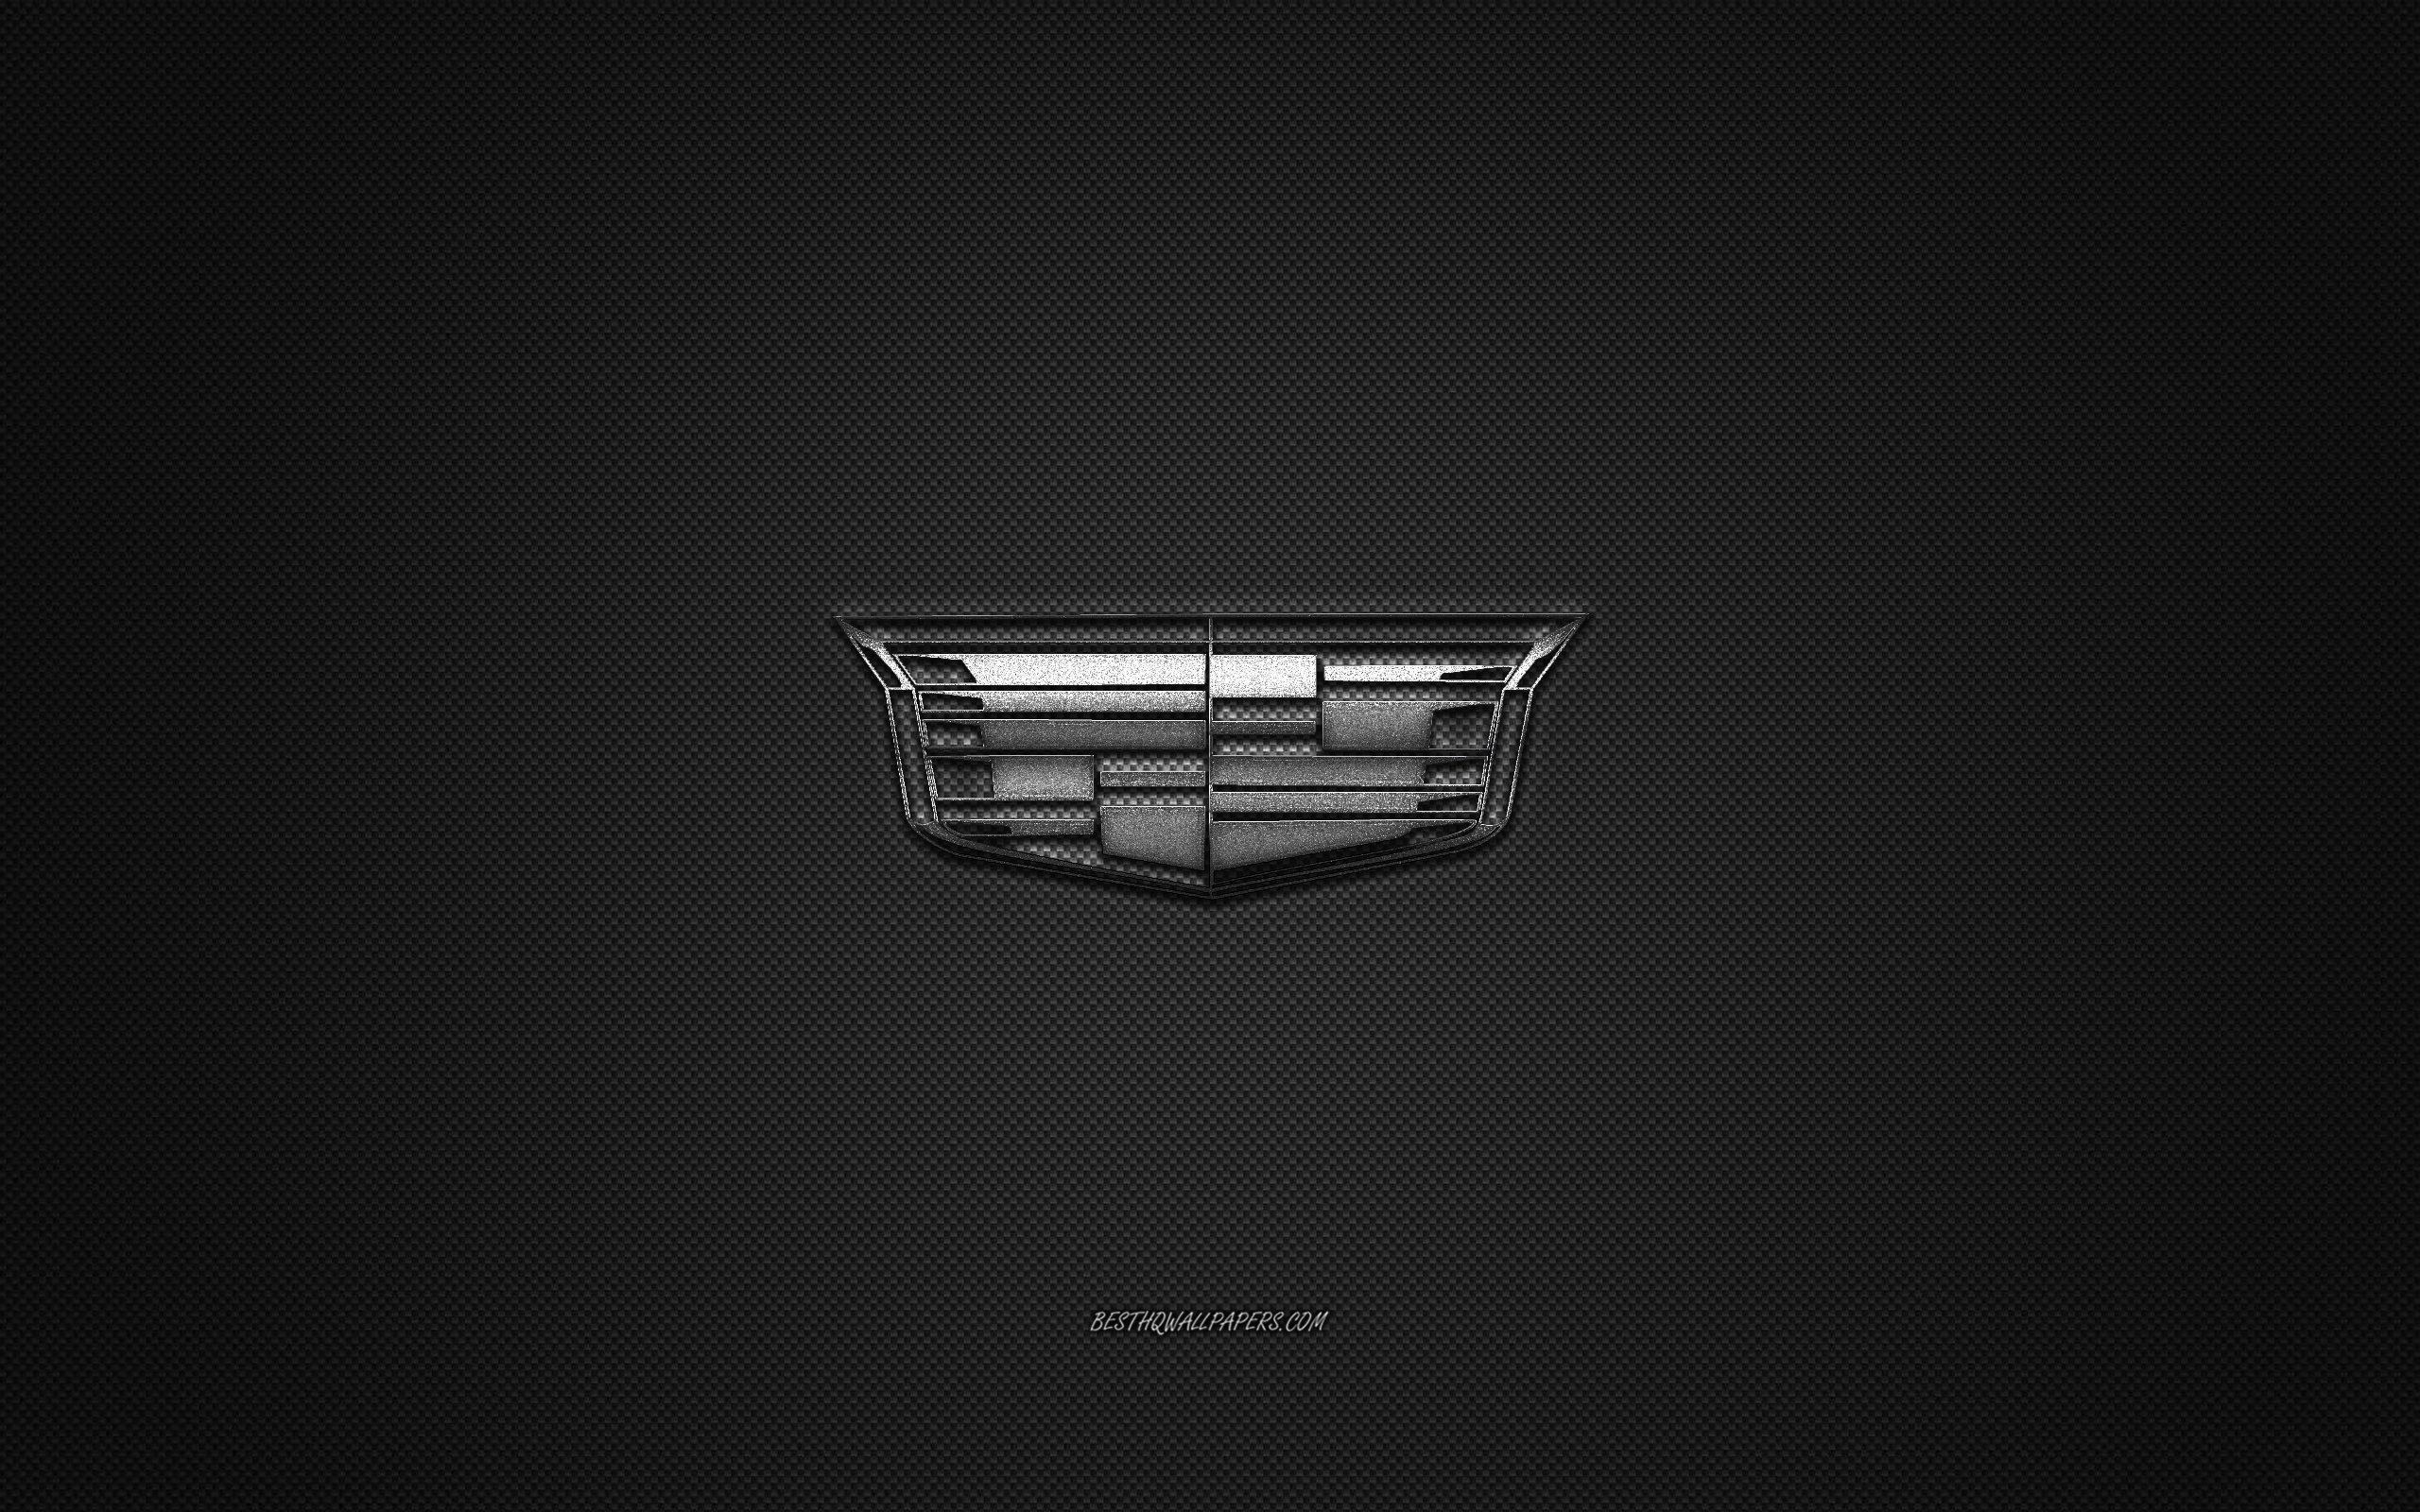 Cadillac Logo Wallpapers